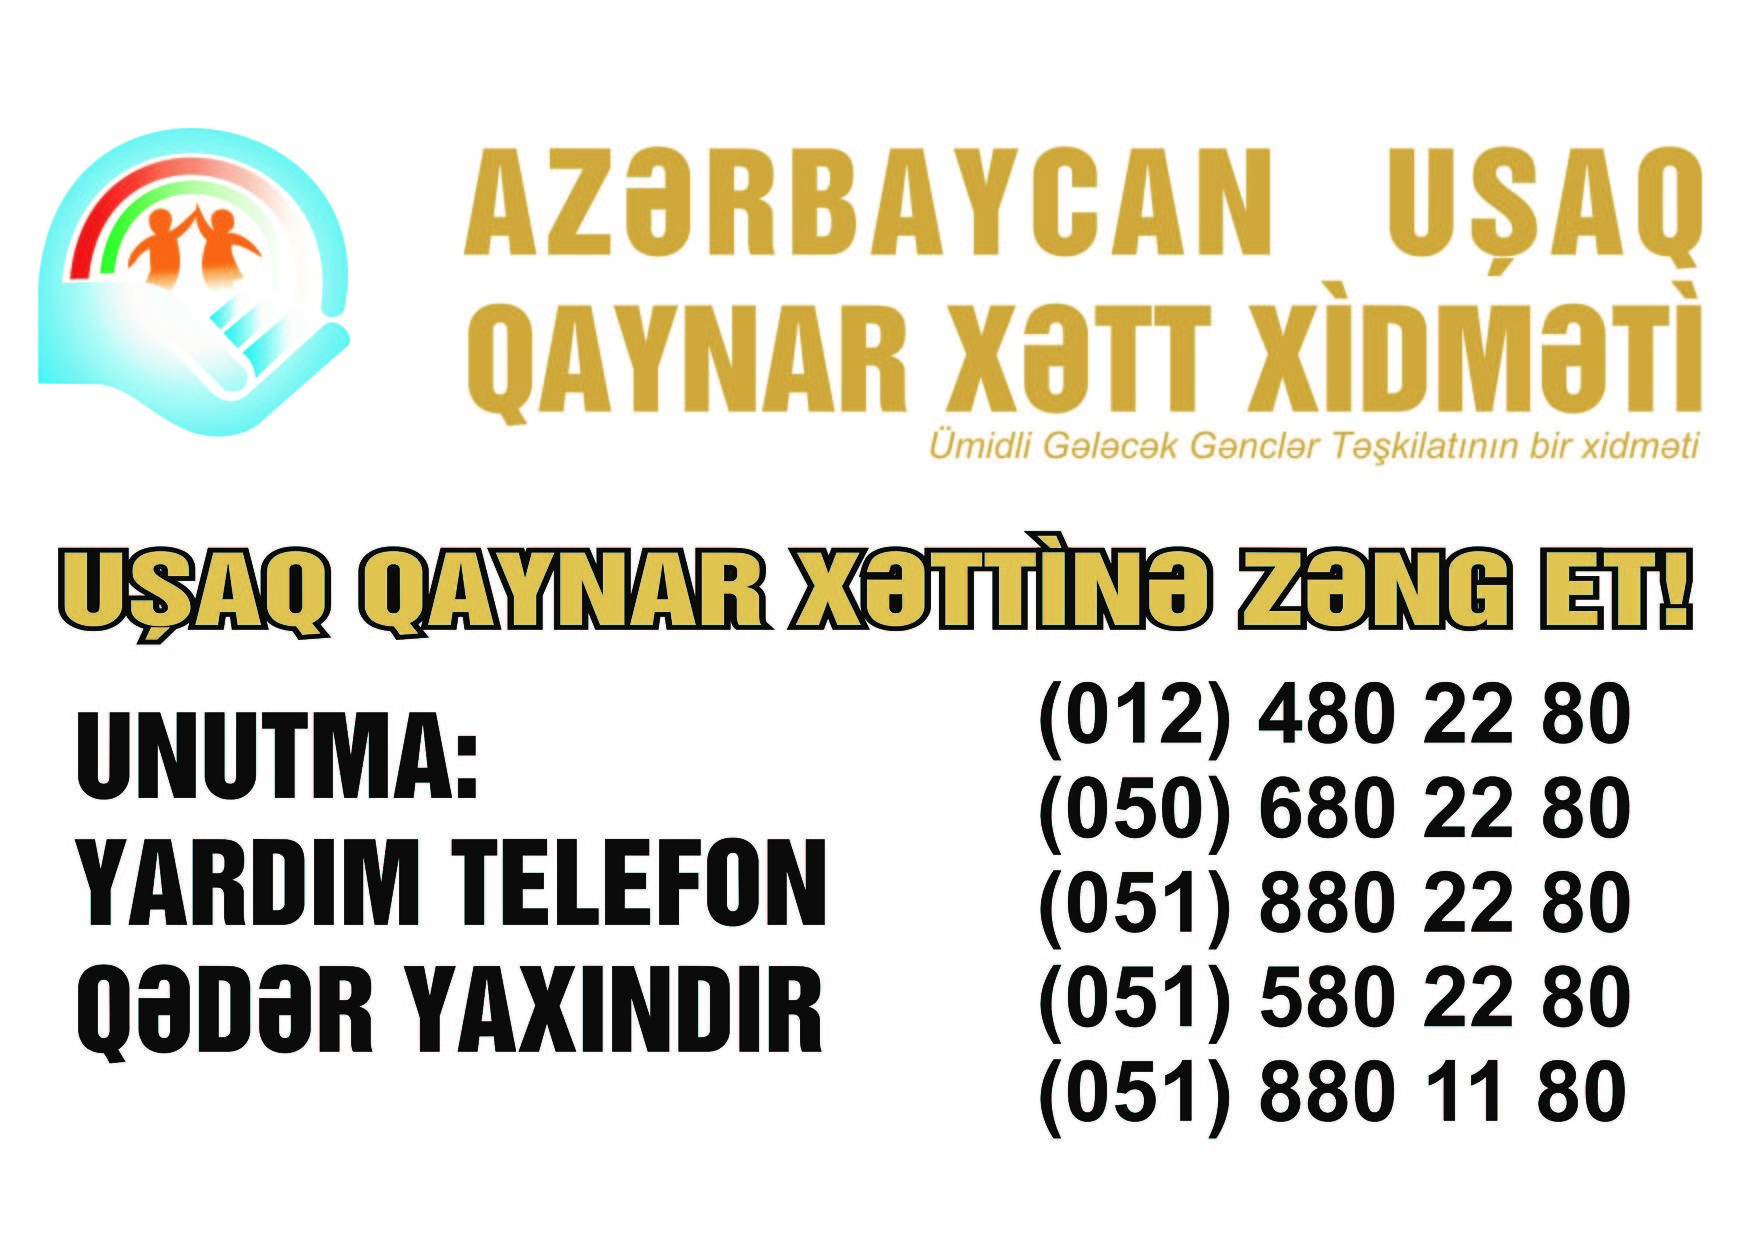 Ötən il “Azərbaycan Uşaq Qaynar Xətt” xidmətinə 3581 müraciət daxil olub